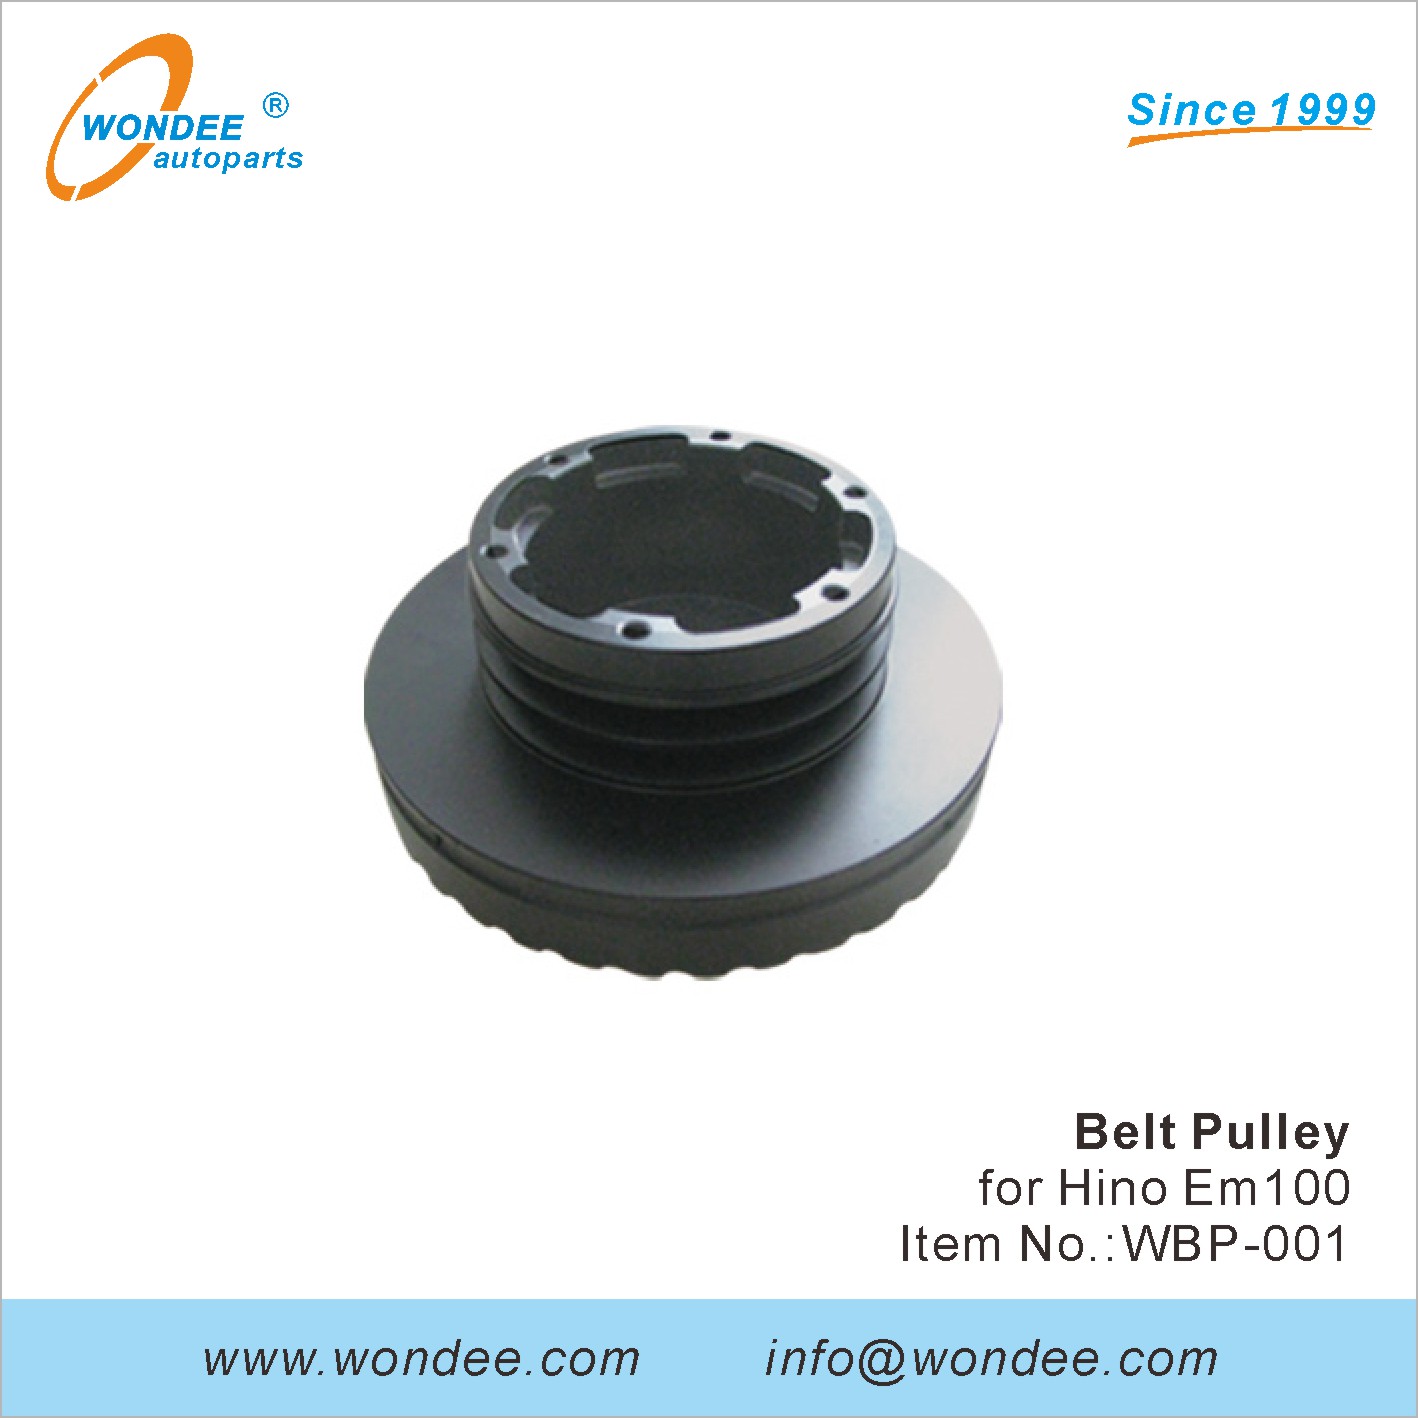 WONDEE belt pulley (1)